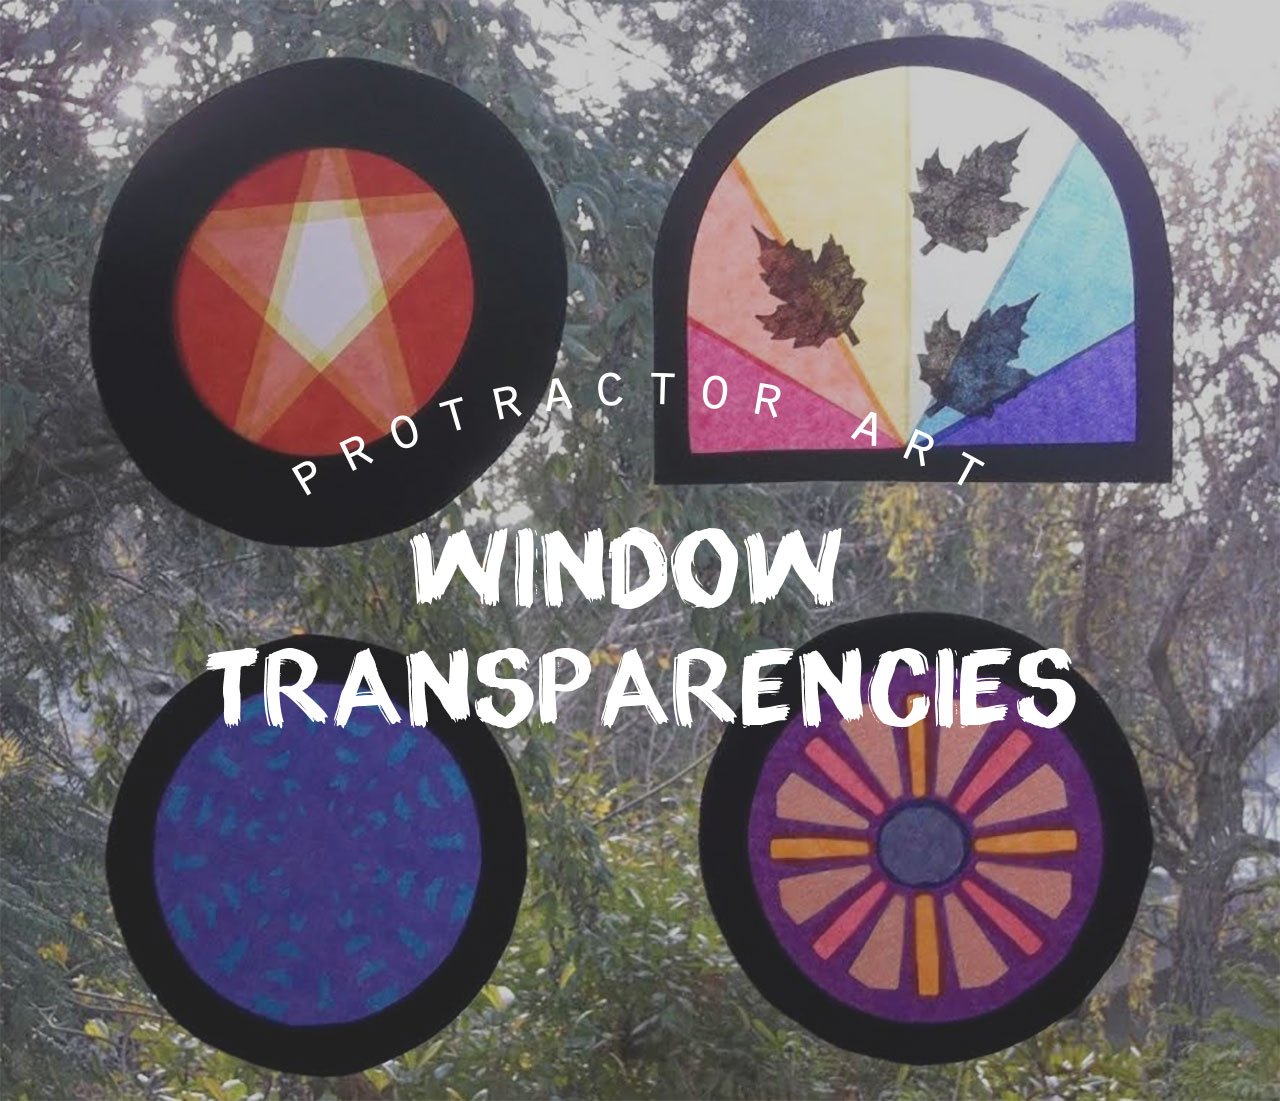 Protractor Art: Window Transparencies